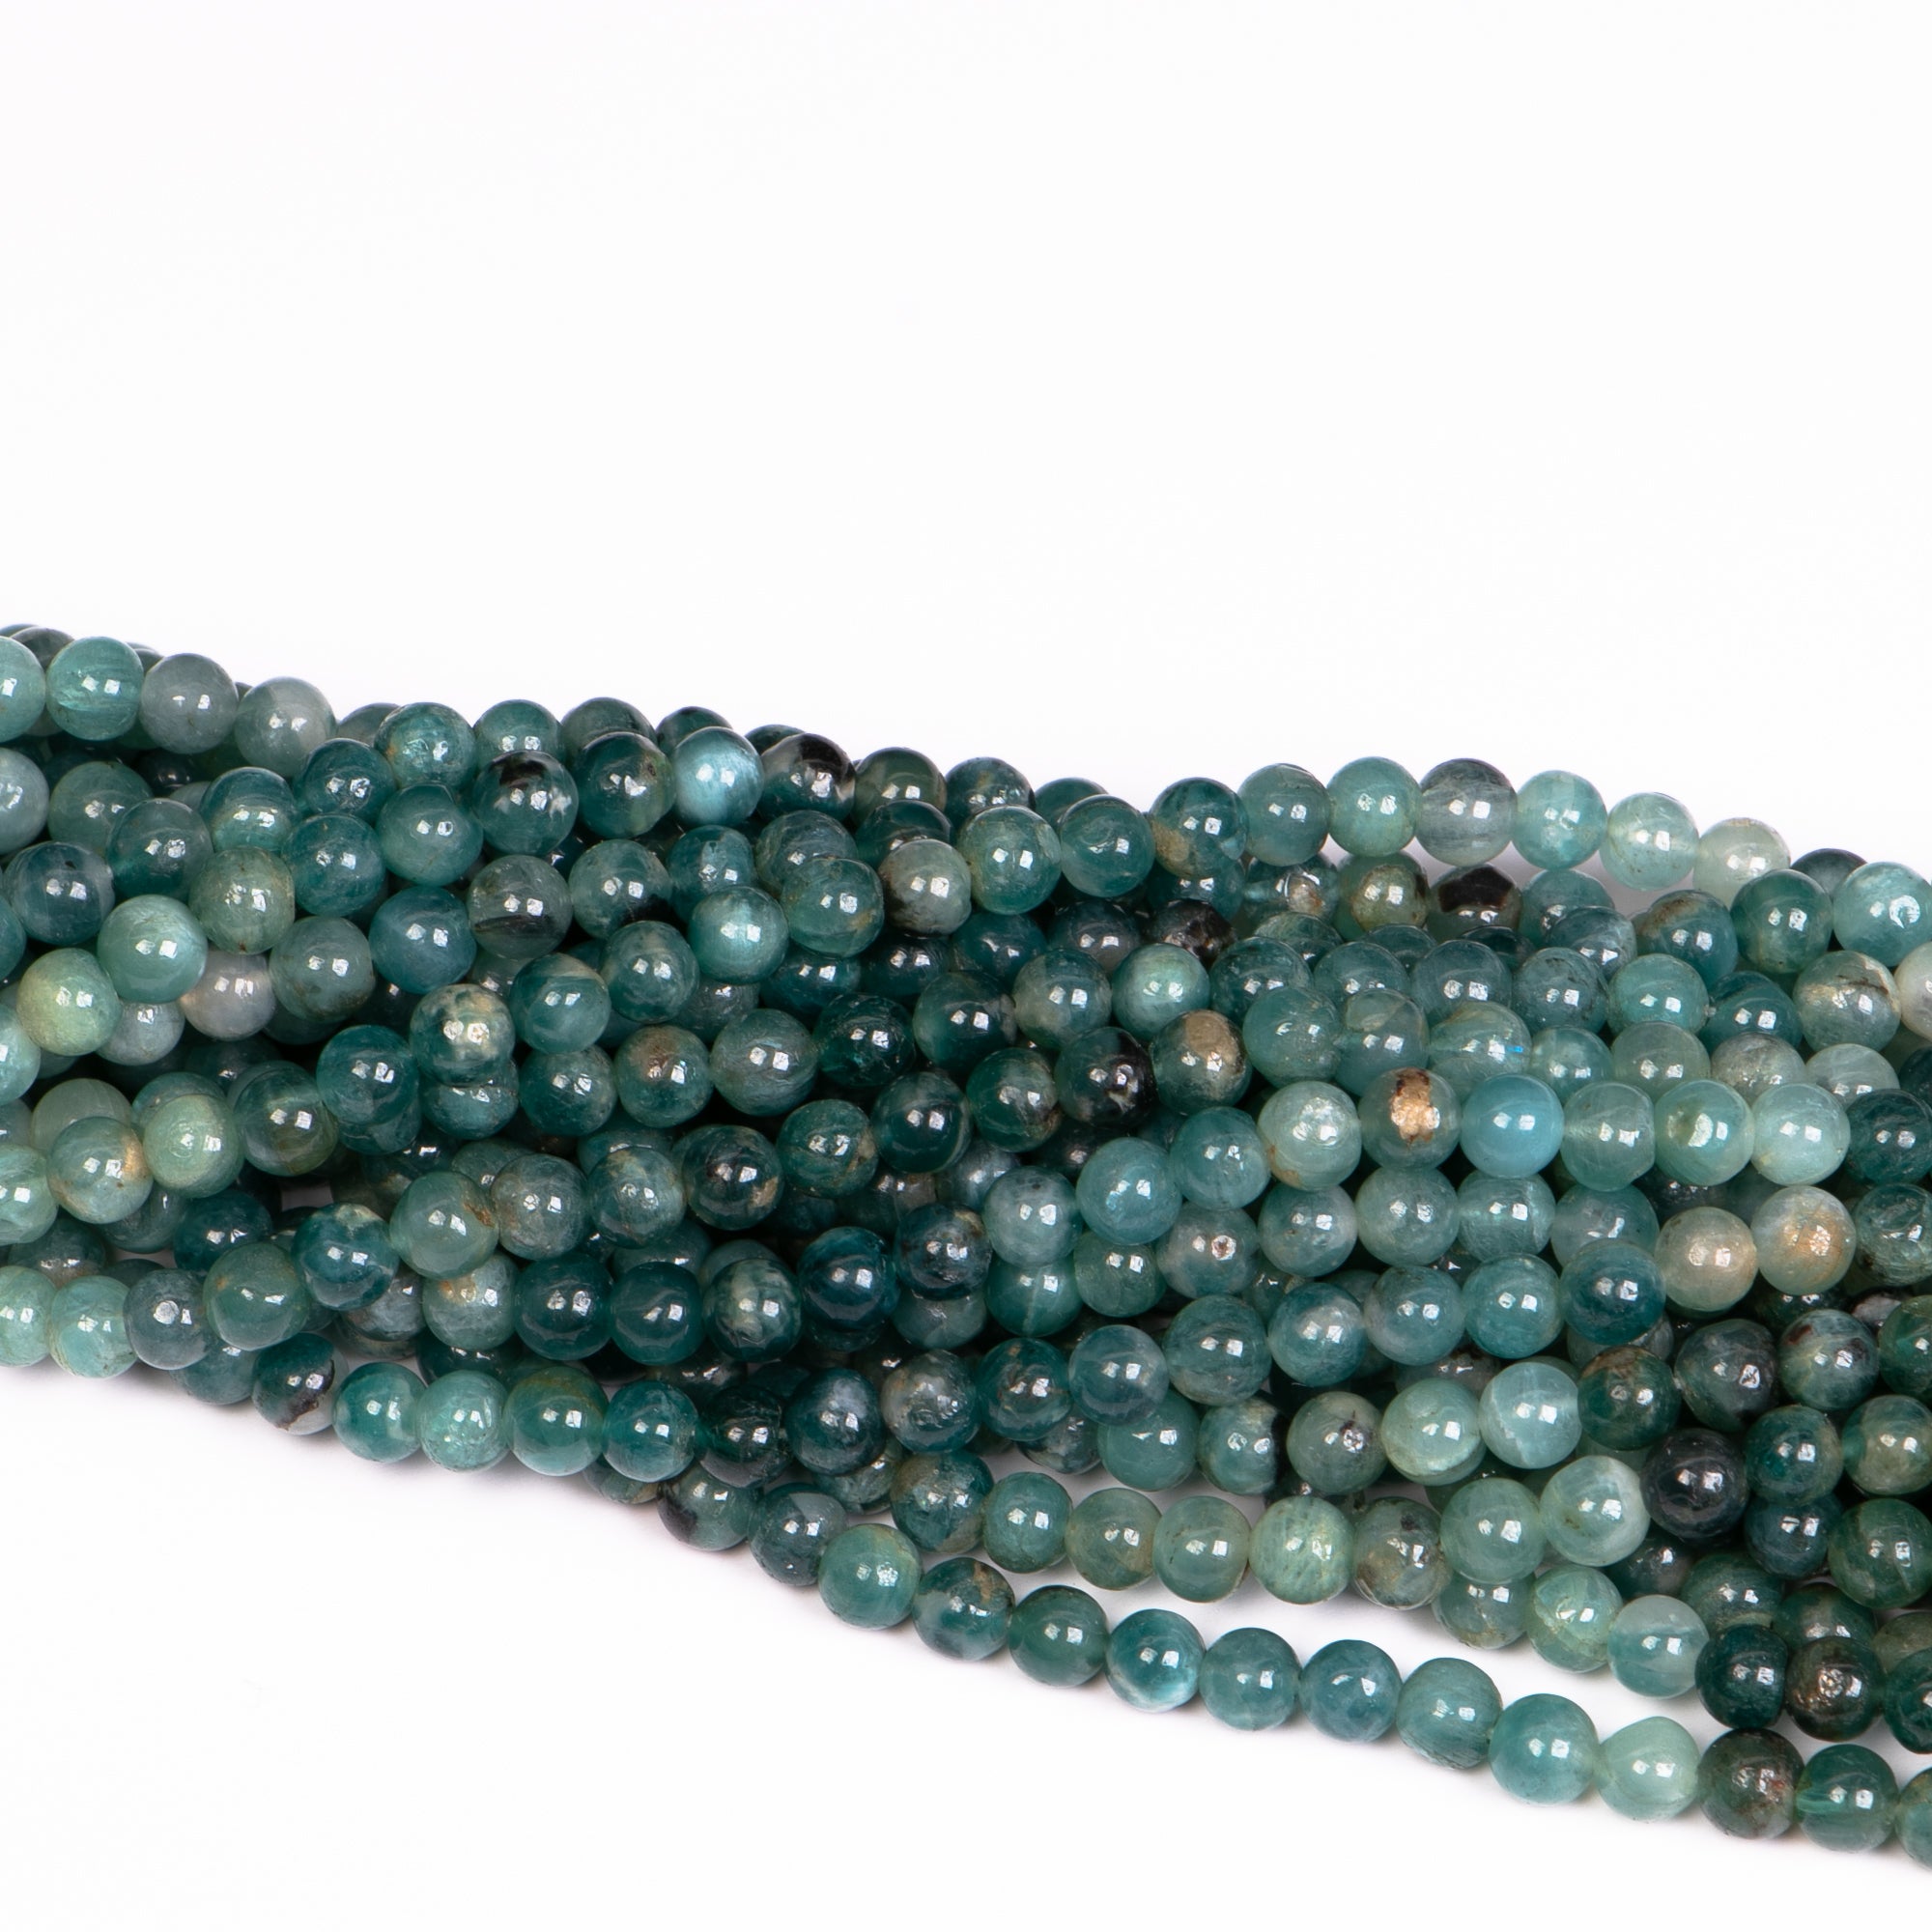 4-5 mm Grandidierite Smooth Round Beads, Loose Grandidierite Strand, Gemstone Beads